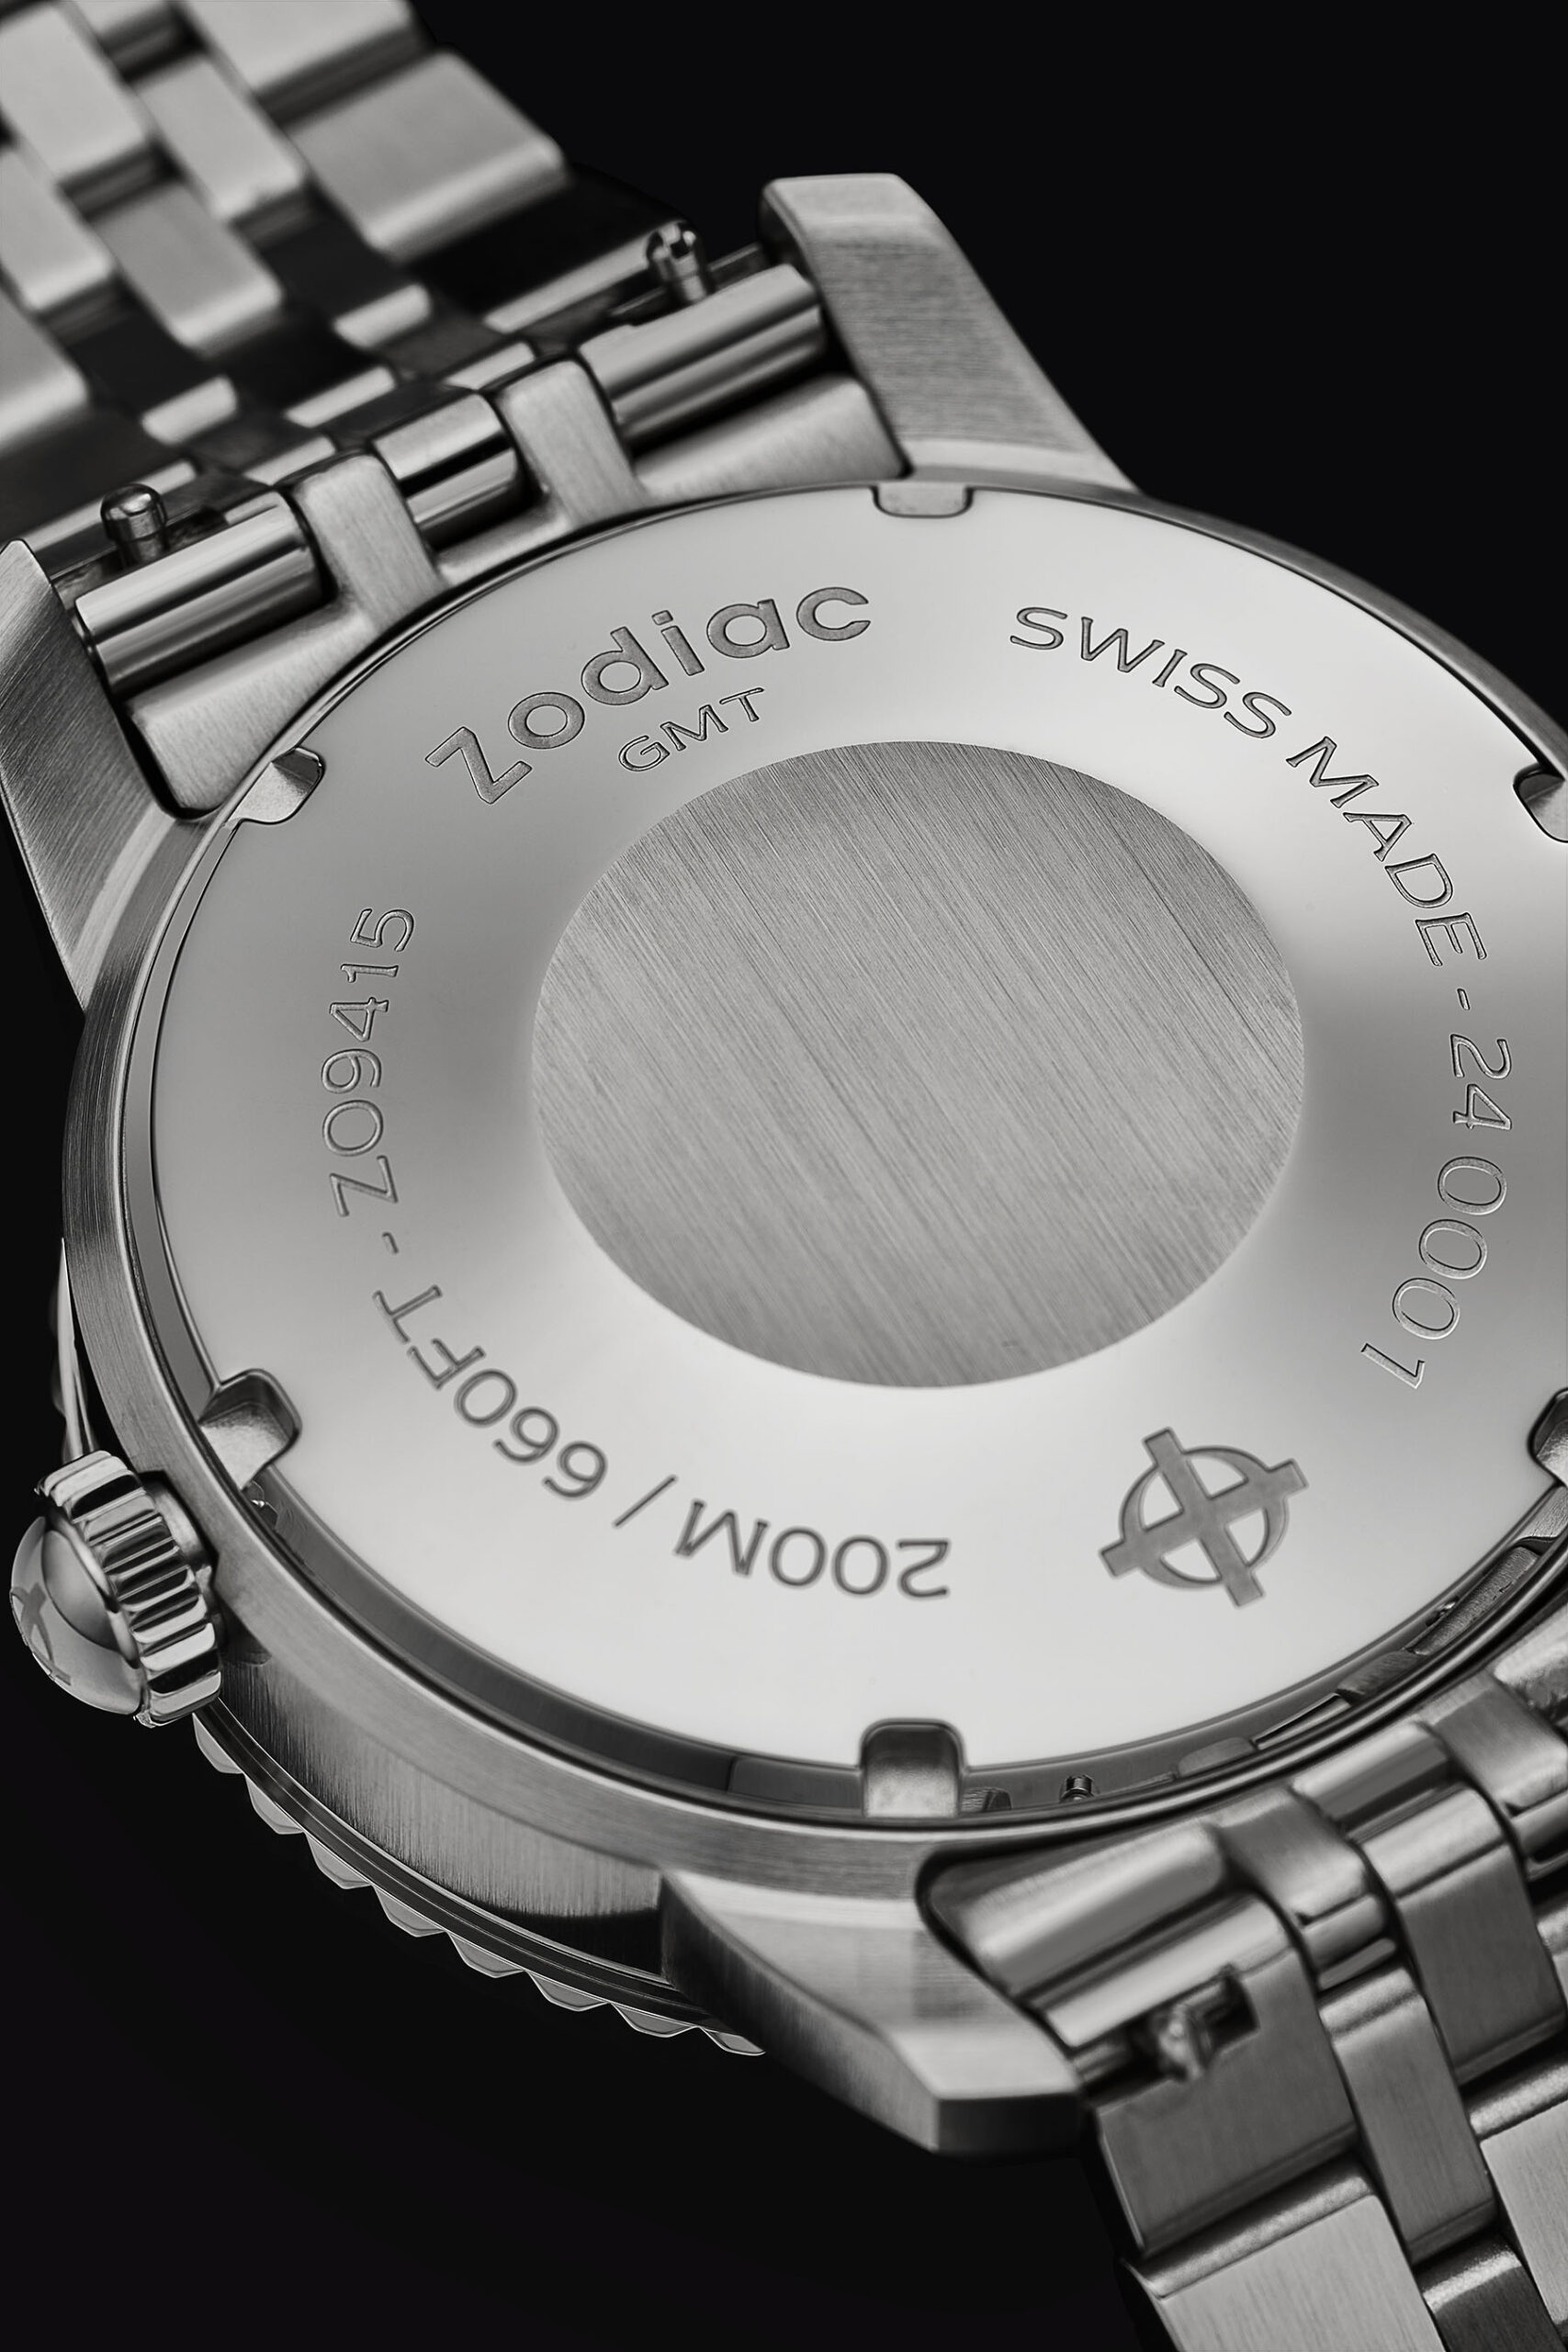 Часы Zodiac Super Sea Wolf GMT представлены в двух версиях